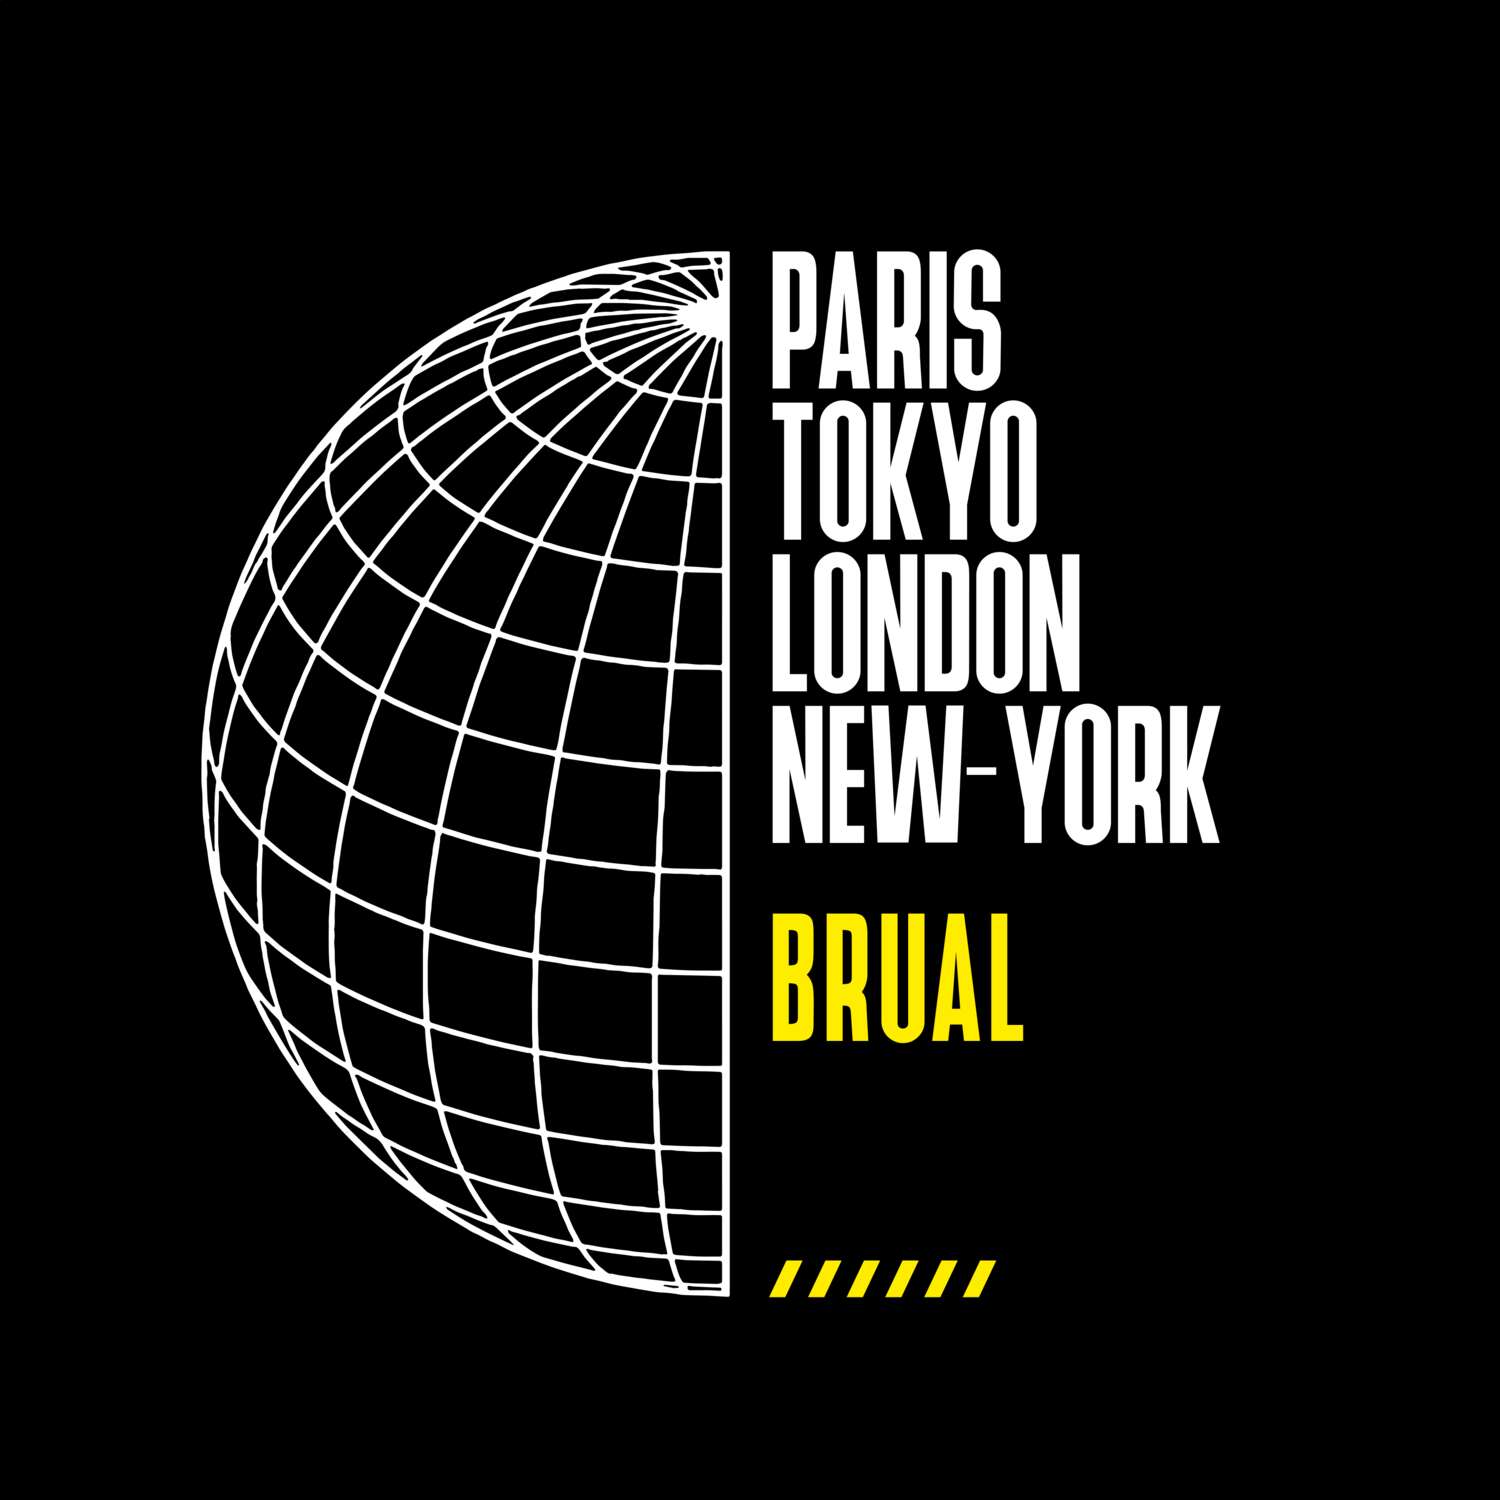 Brual T-Shirt »Paris Tokyo London«